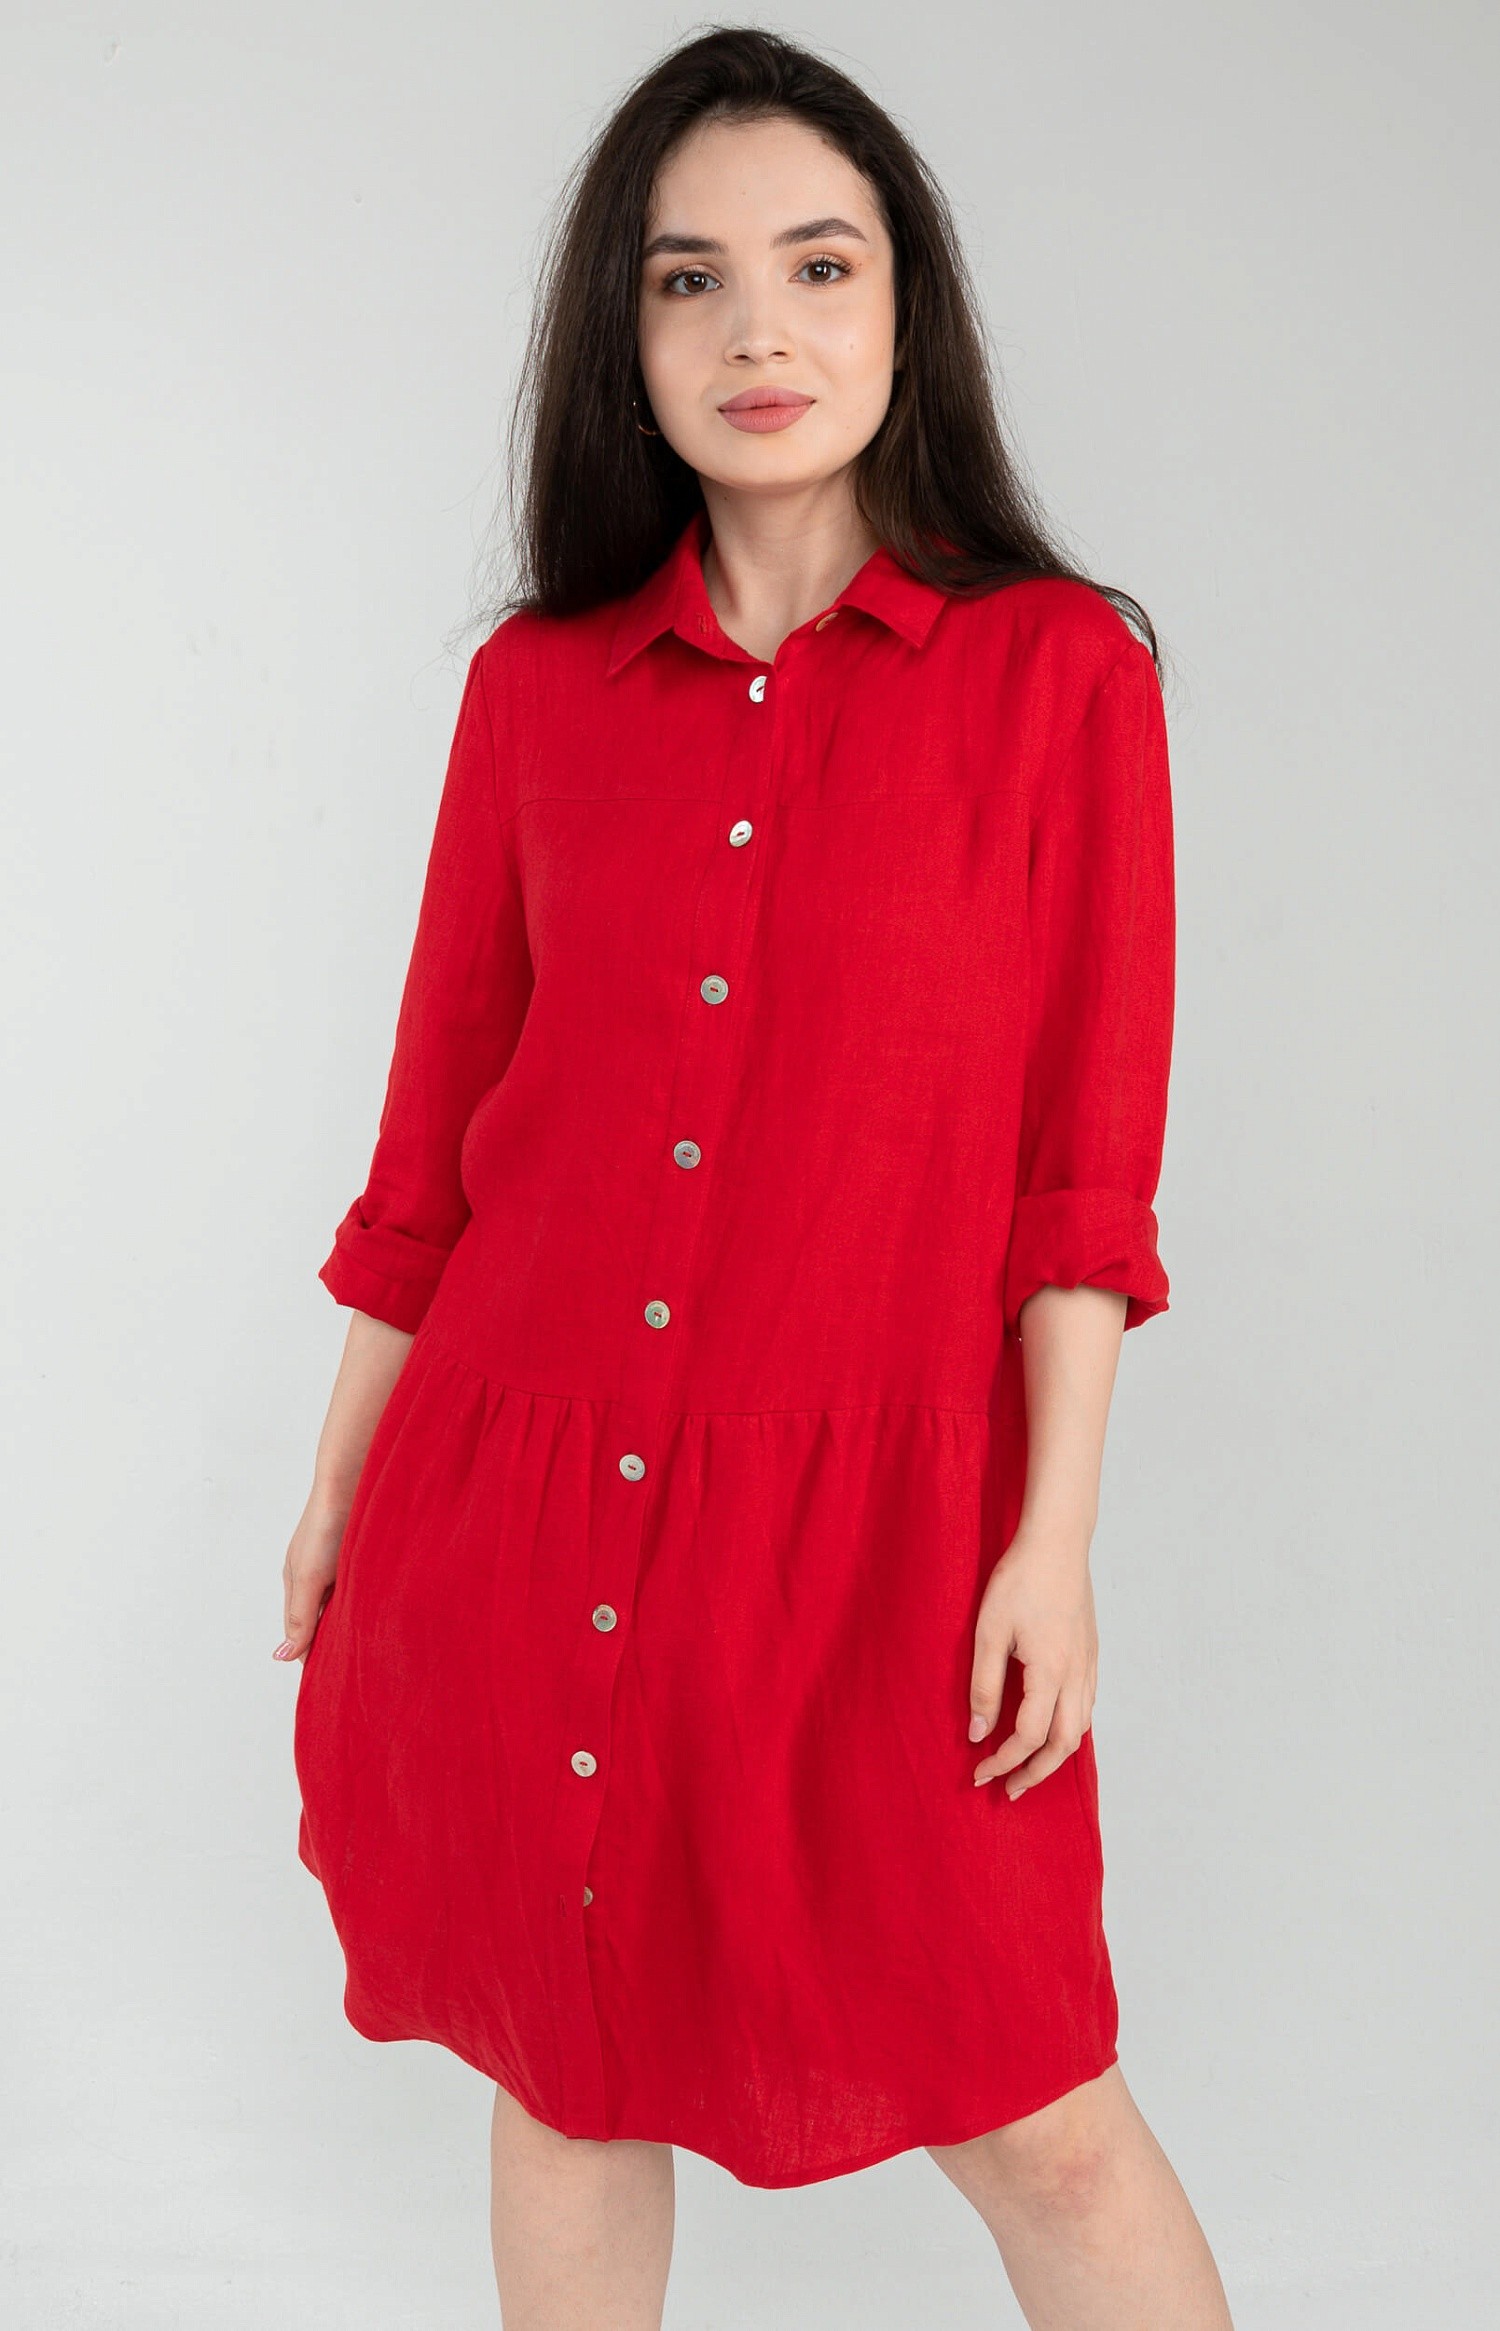 Льняное платье-рубашка Парма Enzy черешня 8 400 руб - купить в шоуруме, магазине, доставка с примеркой по России, Москве